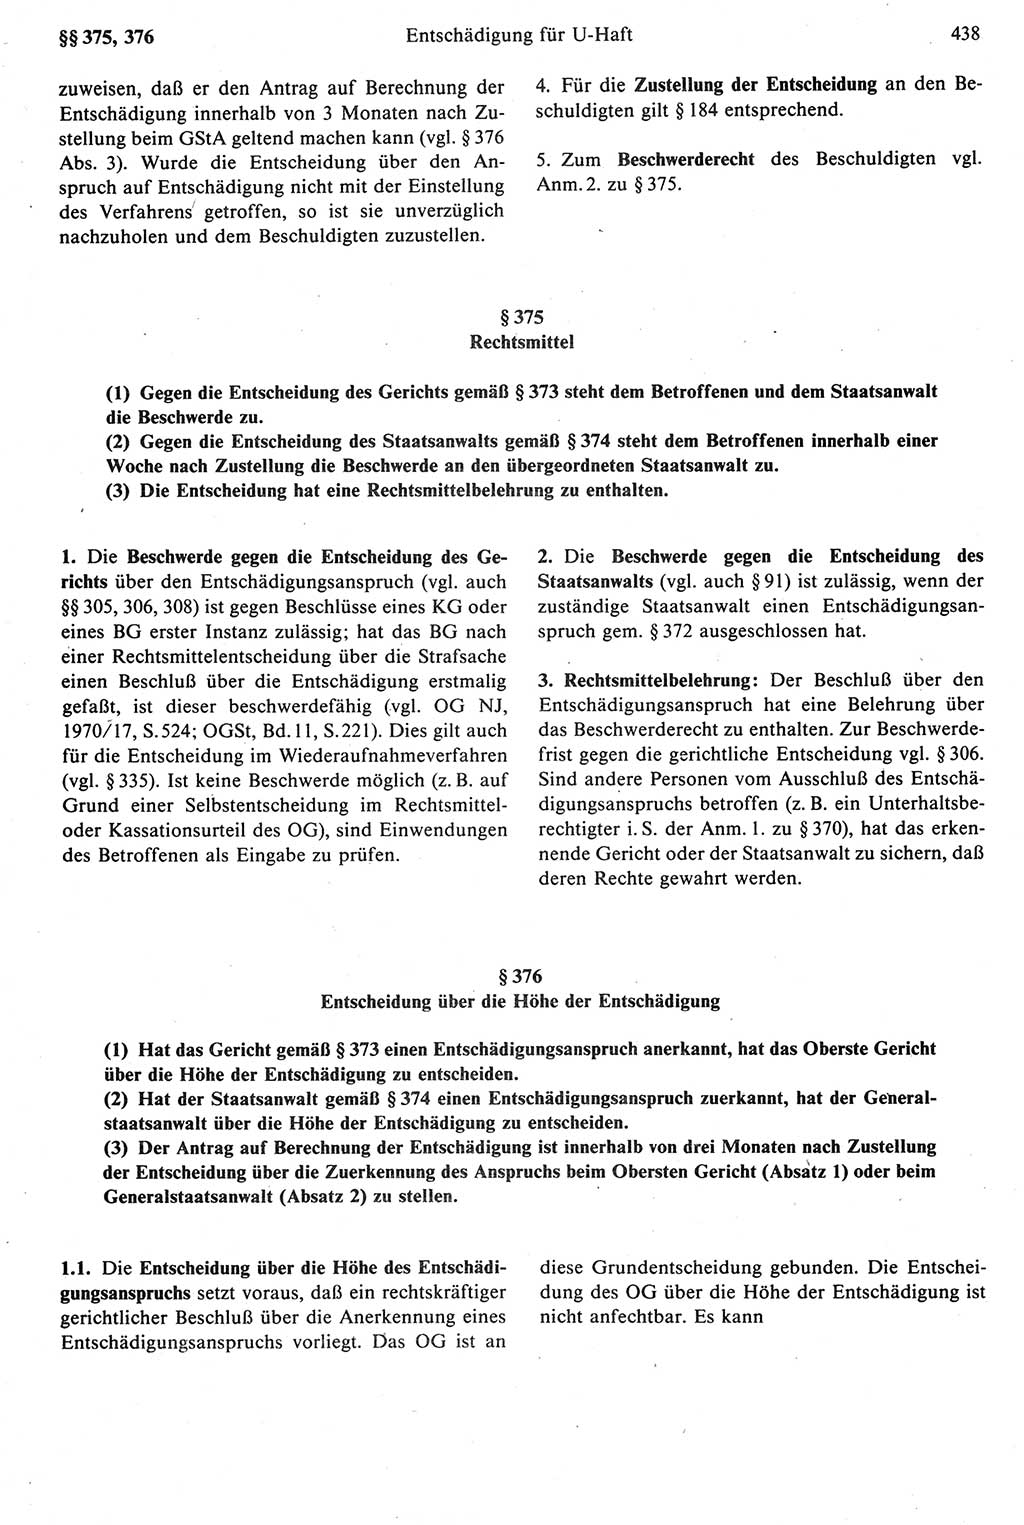 Strafprozeßrecht der DDR [Deutsche Demokratische Republik], Kommentar zur Strafprozeßordnung (StPO) 1987, Seite 438 (Strafprozeßr. DDR Komm. StPO 1987, S. 438)